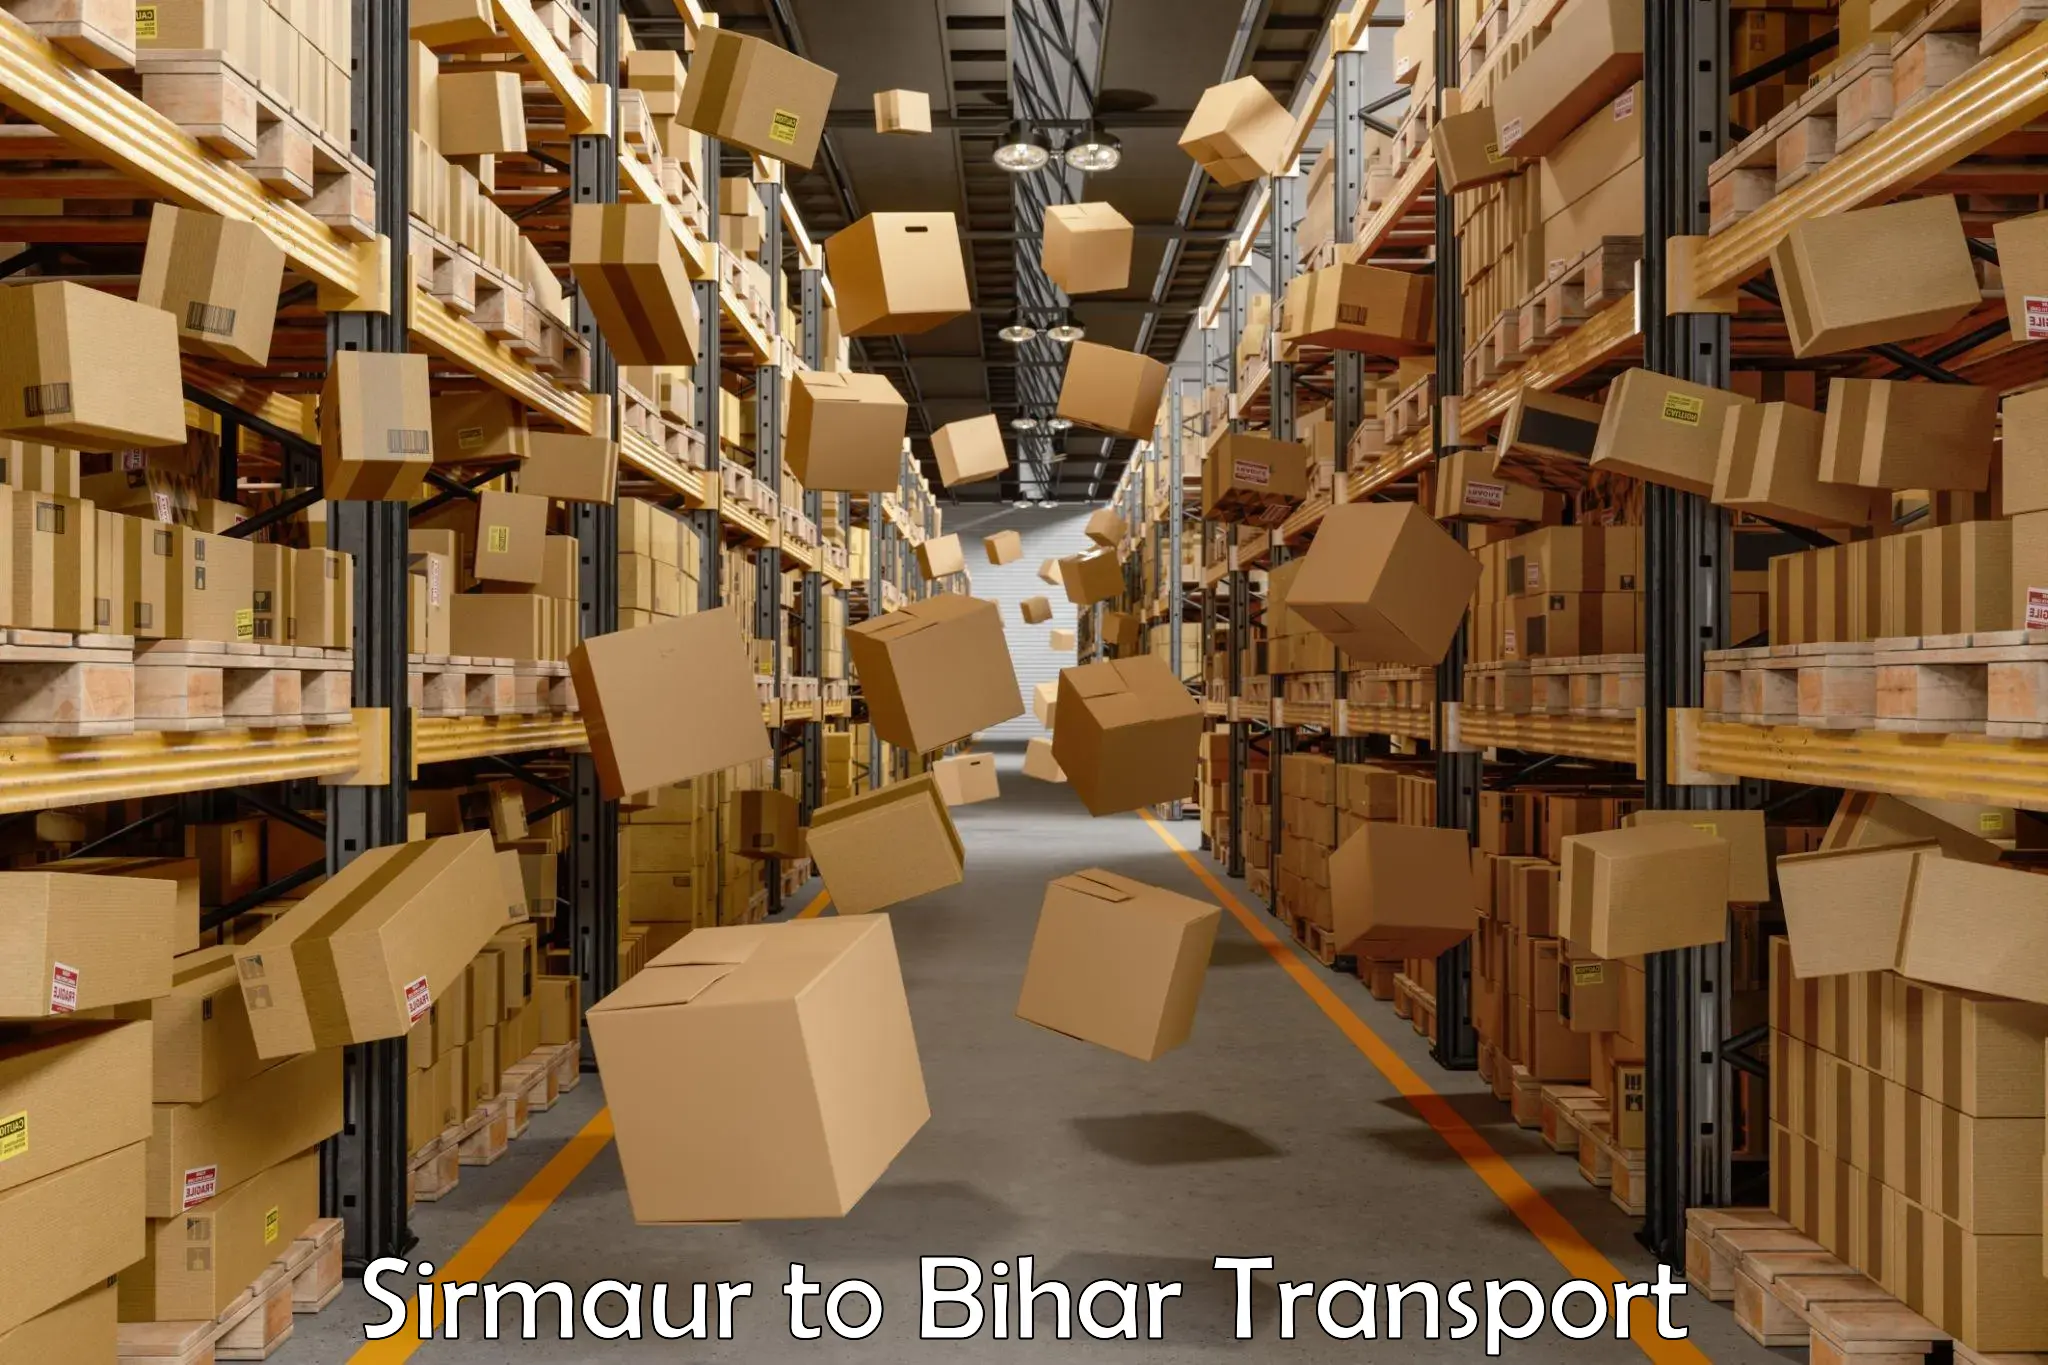 Online transport service Sirmaur to Bikramganj